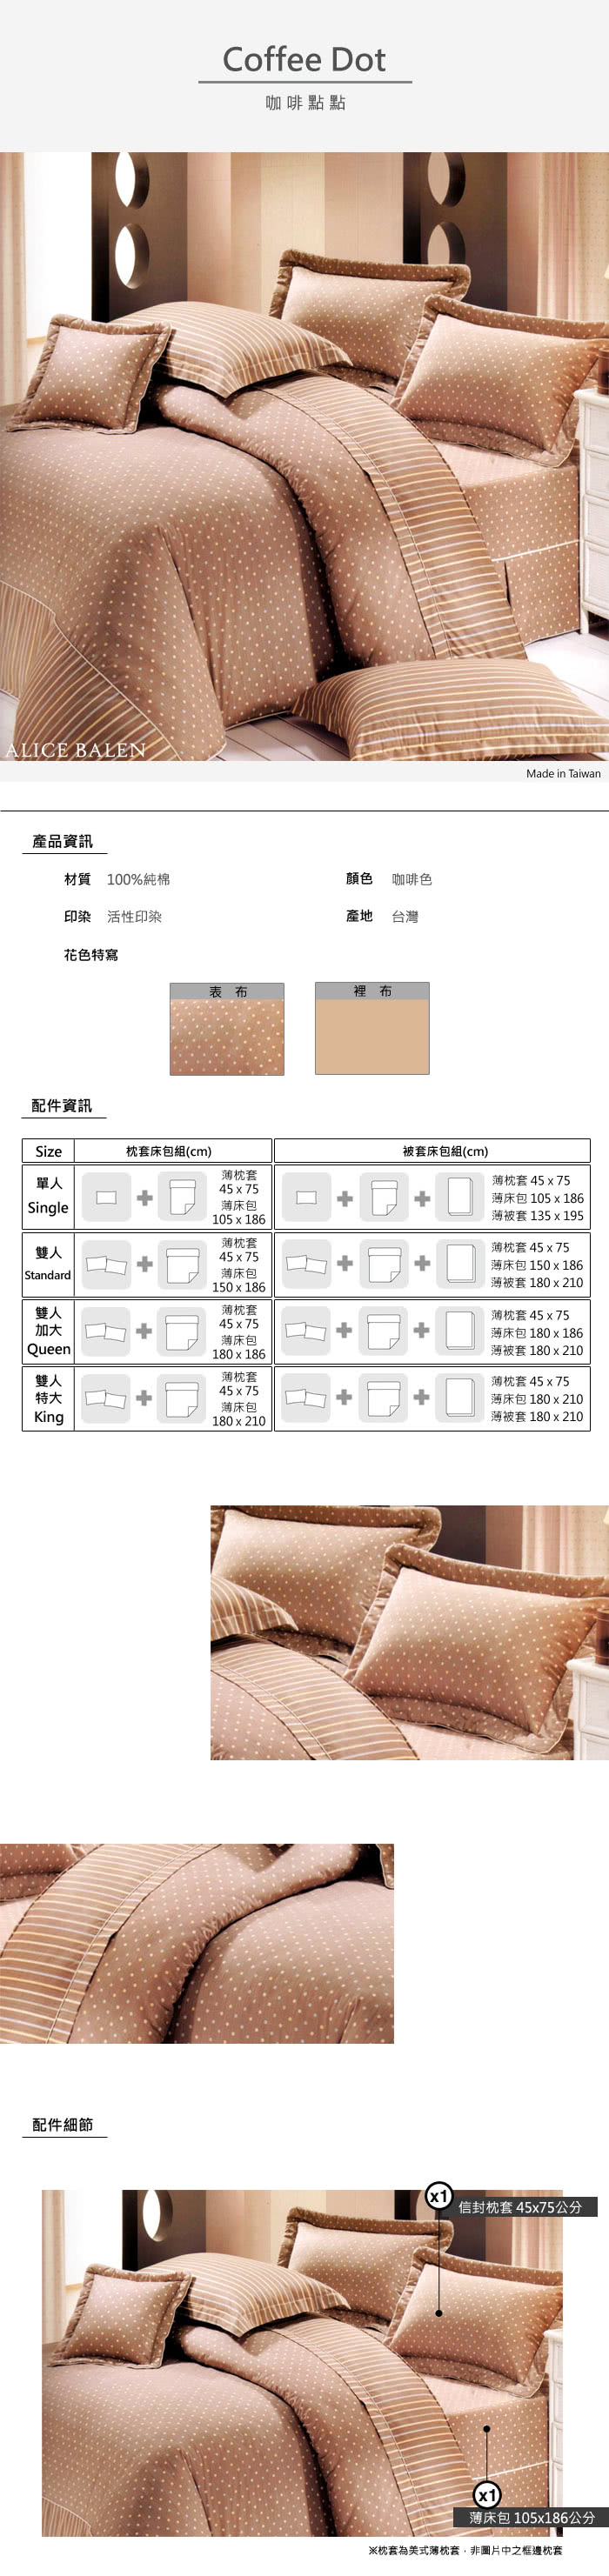 【艾莉絲-貝倫】咖啡點點(3.5呎x6.2呎)二件式單人(100%純棉)枕套床包組(咖啡色)